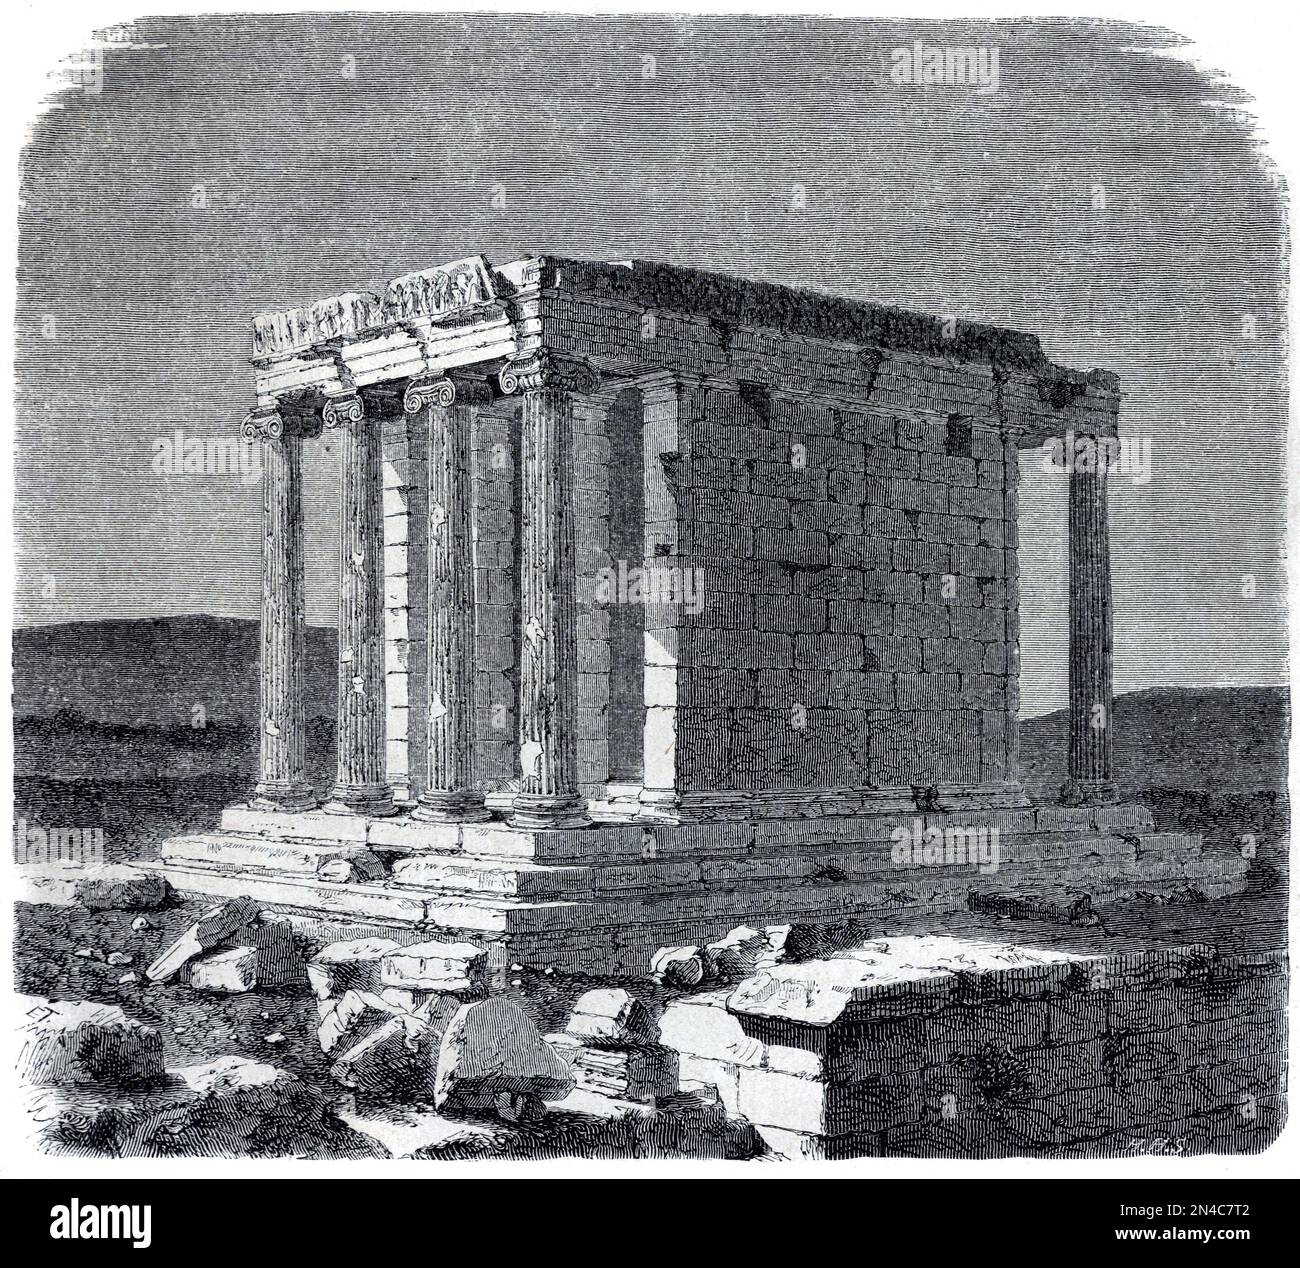 Temple d'Athéna Nike (420BC) temple ionique sur l'Acropole d'Athènes, dédié à Athéna et Nike, Athènes Grèce. Gravure ancienne ou illustration 1862 Banque D'Images